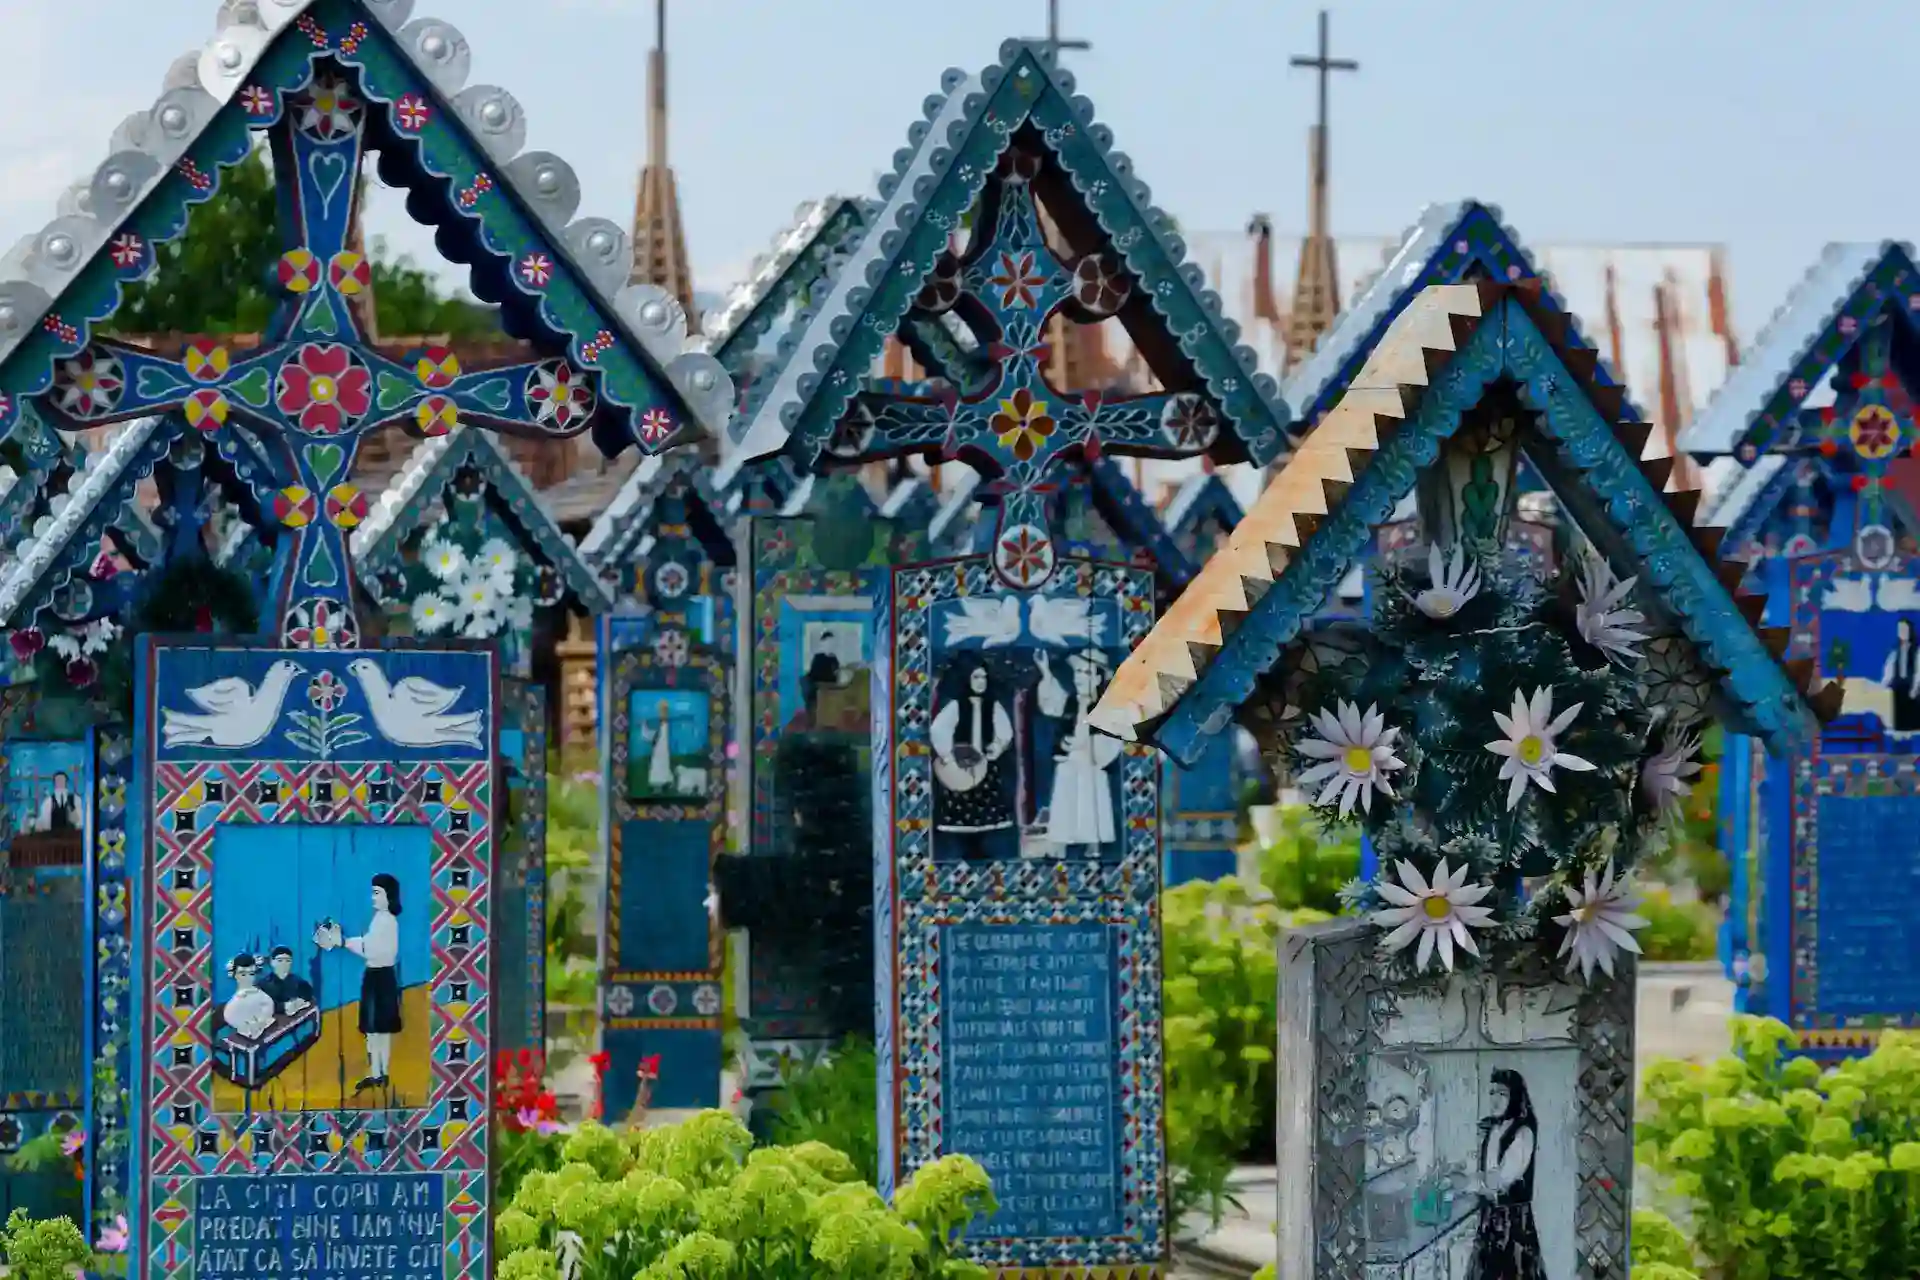 Le joyeux cimetière de Sapanta, Maramures, Roumanie, est très célèbre et probablement le plus beau cimetière du monde